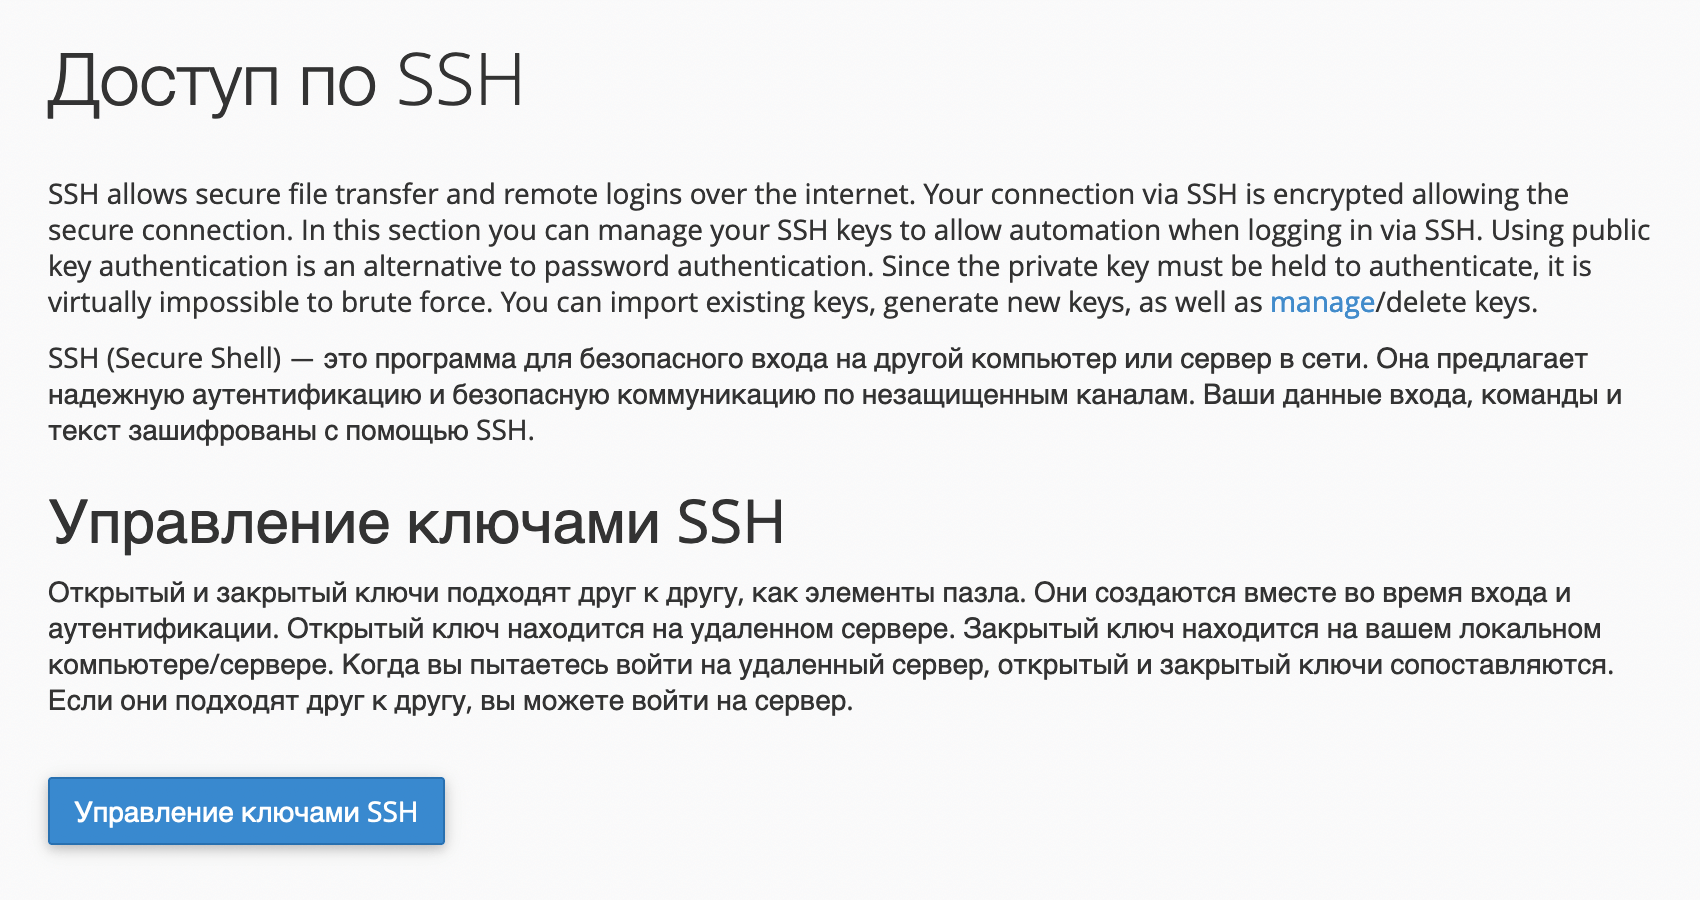 Кнопка «Управление ключами SSH» в приложении cPanel «Доступ по SSH»